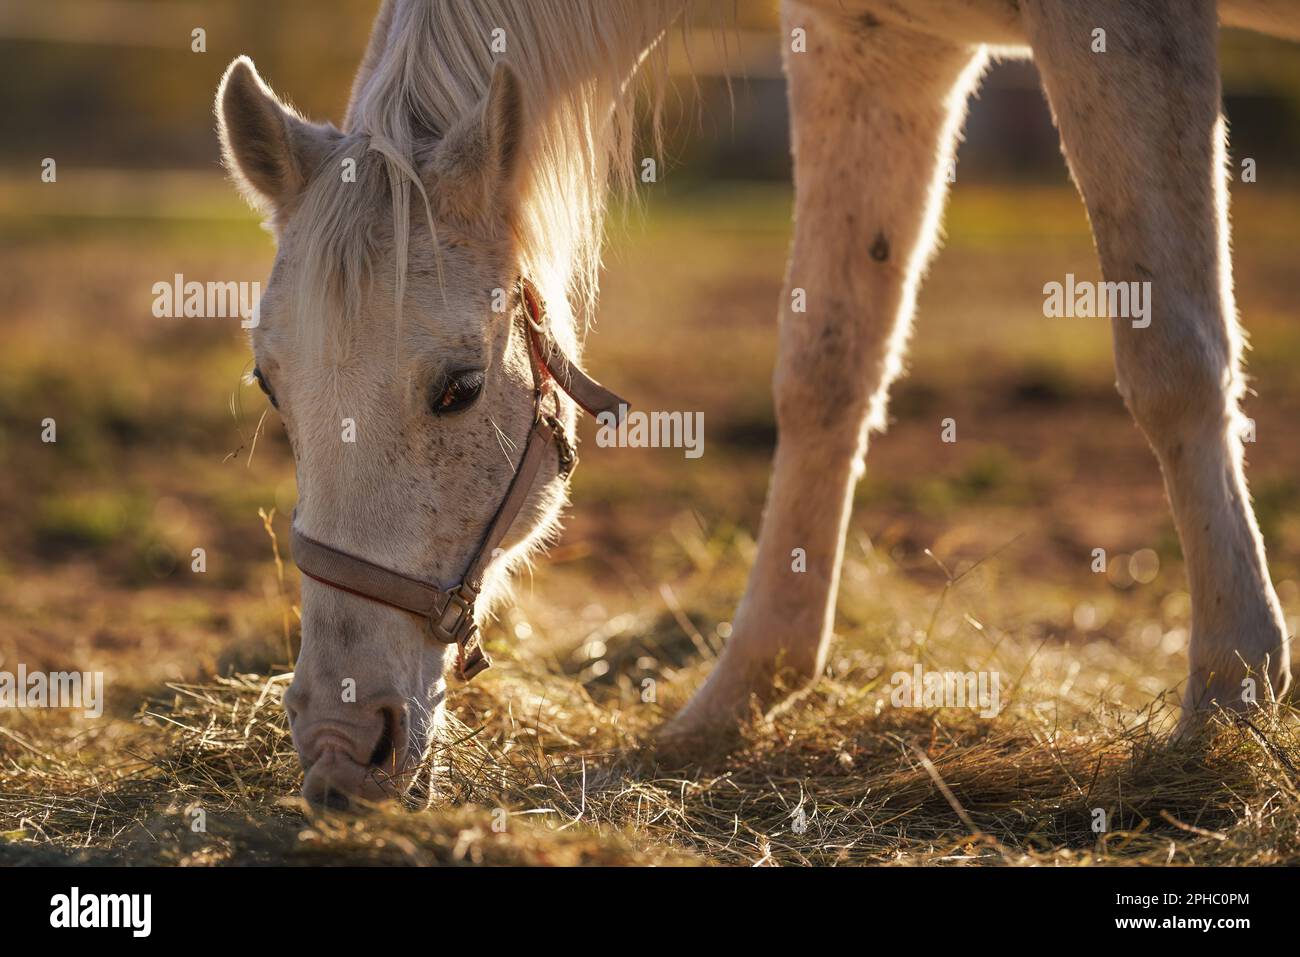 Cavallo arabo bianco che mangia fieno da terra, dettaglio primo piano sulla testa, sfondo del sole retroilluminato Foto Stock